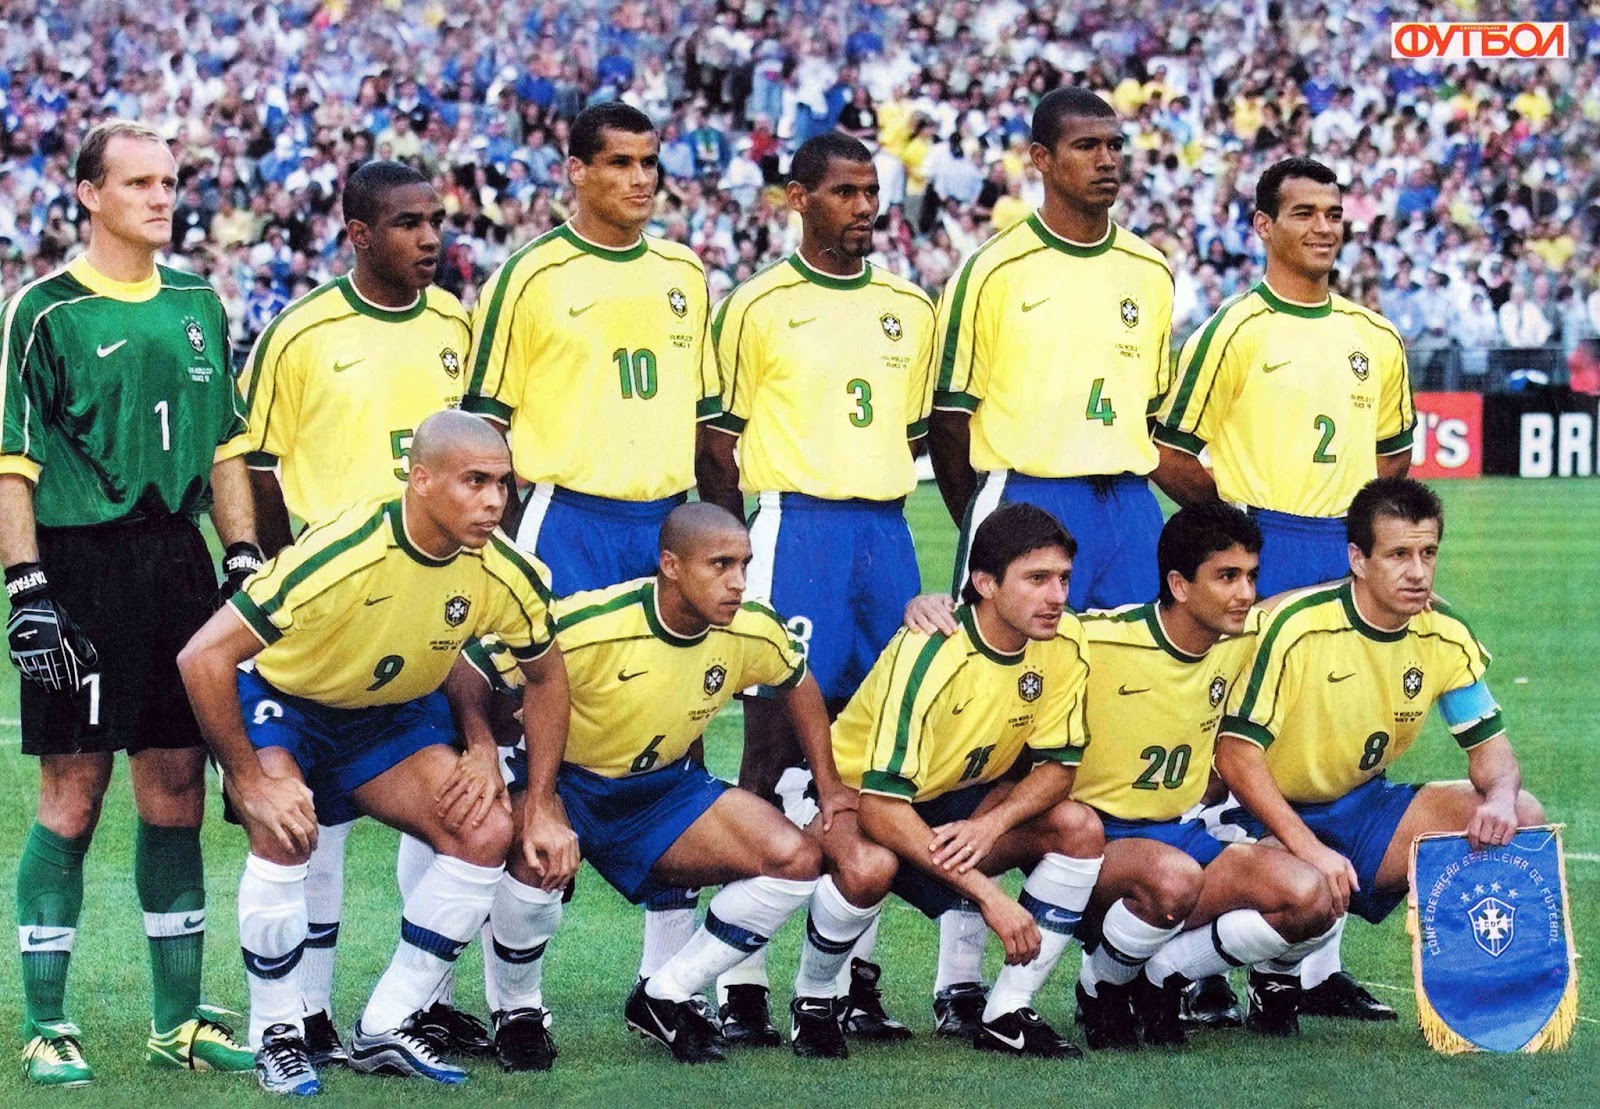 Сборная бразилии чемпионы сколько раз. Состав сборной Бразилии по футболу 1998. Сборная Бразилии с Роналдо 1998. Сборная Бразилии 1998 ЧМ. Сборная Бразилии 2000.